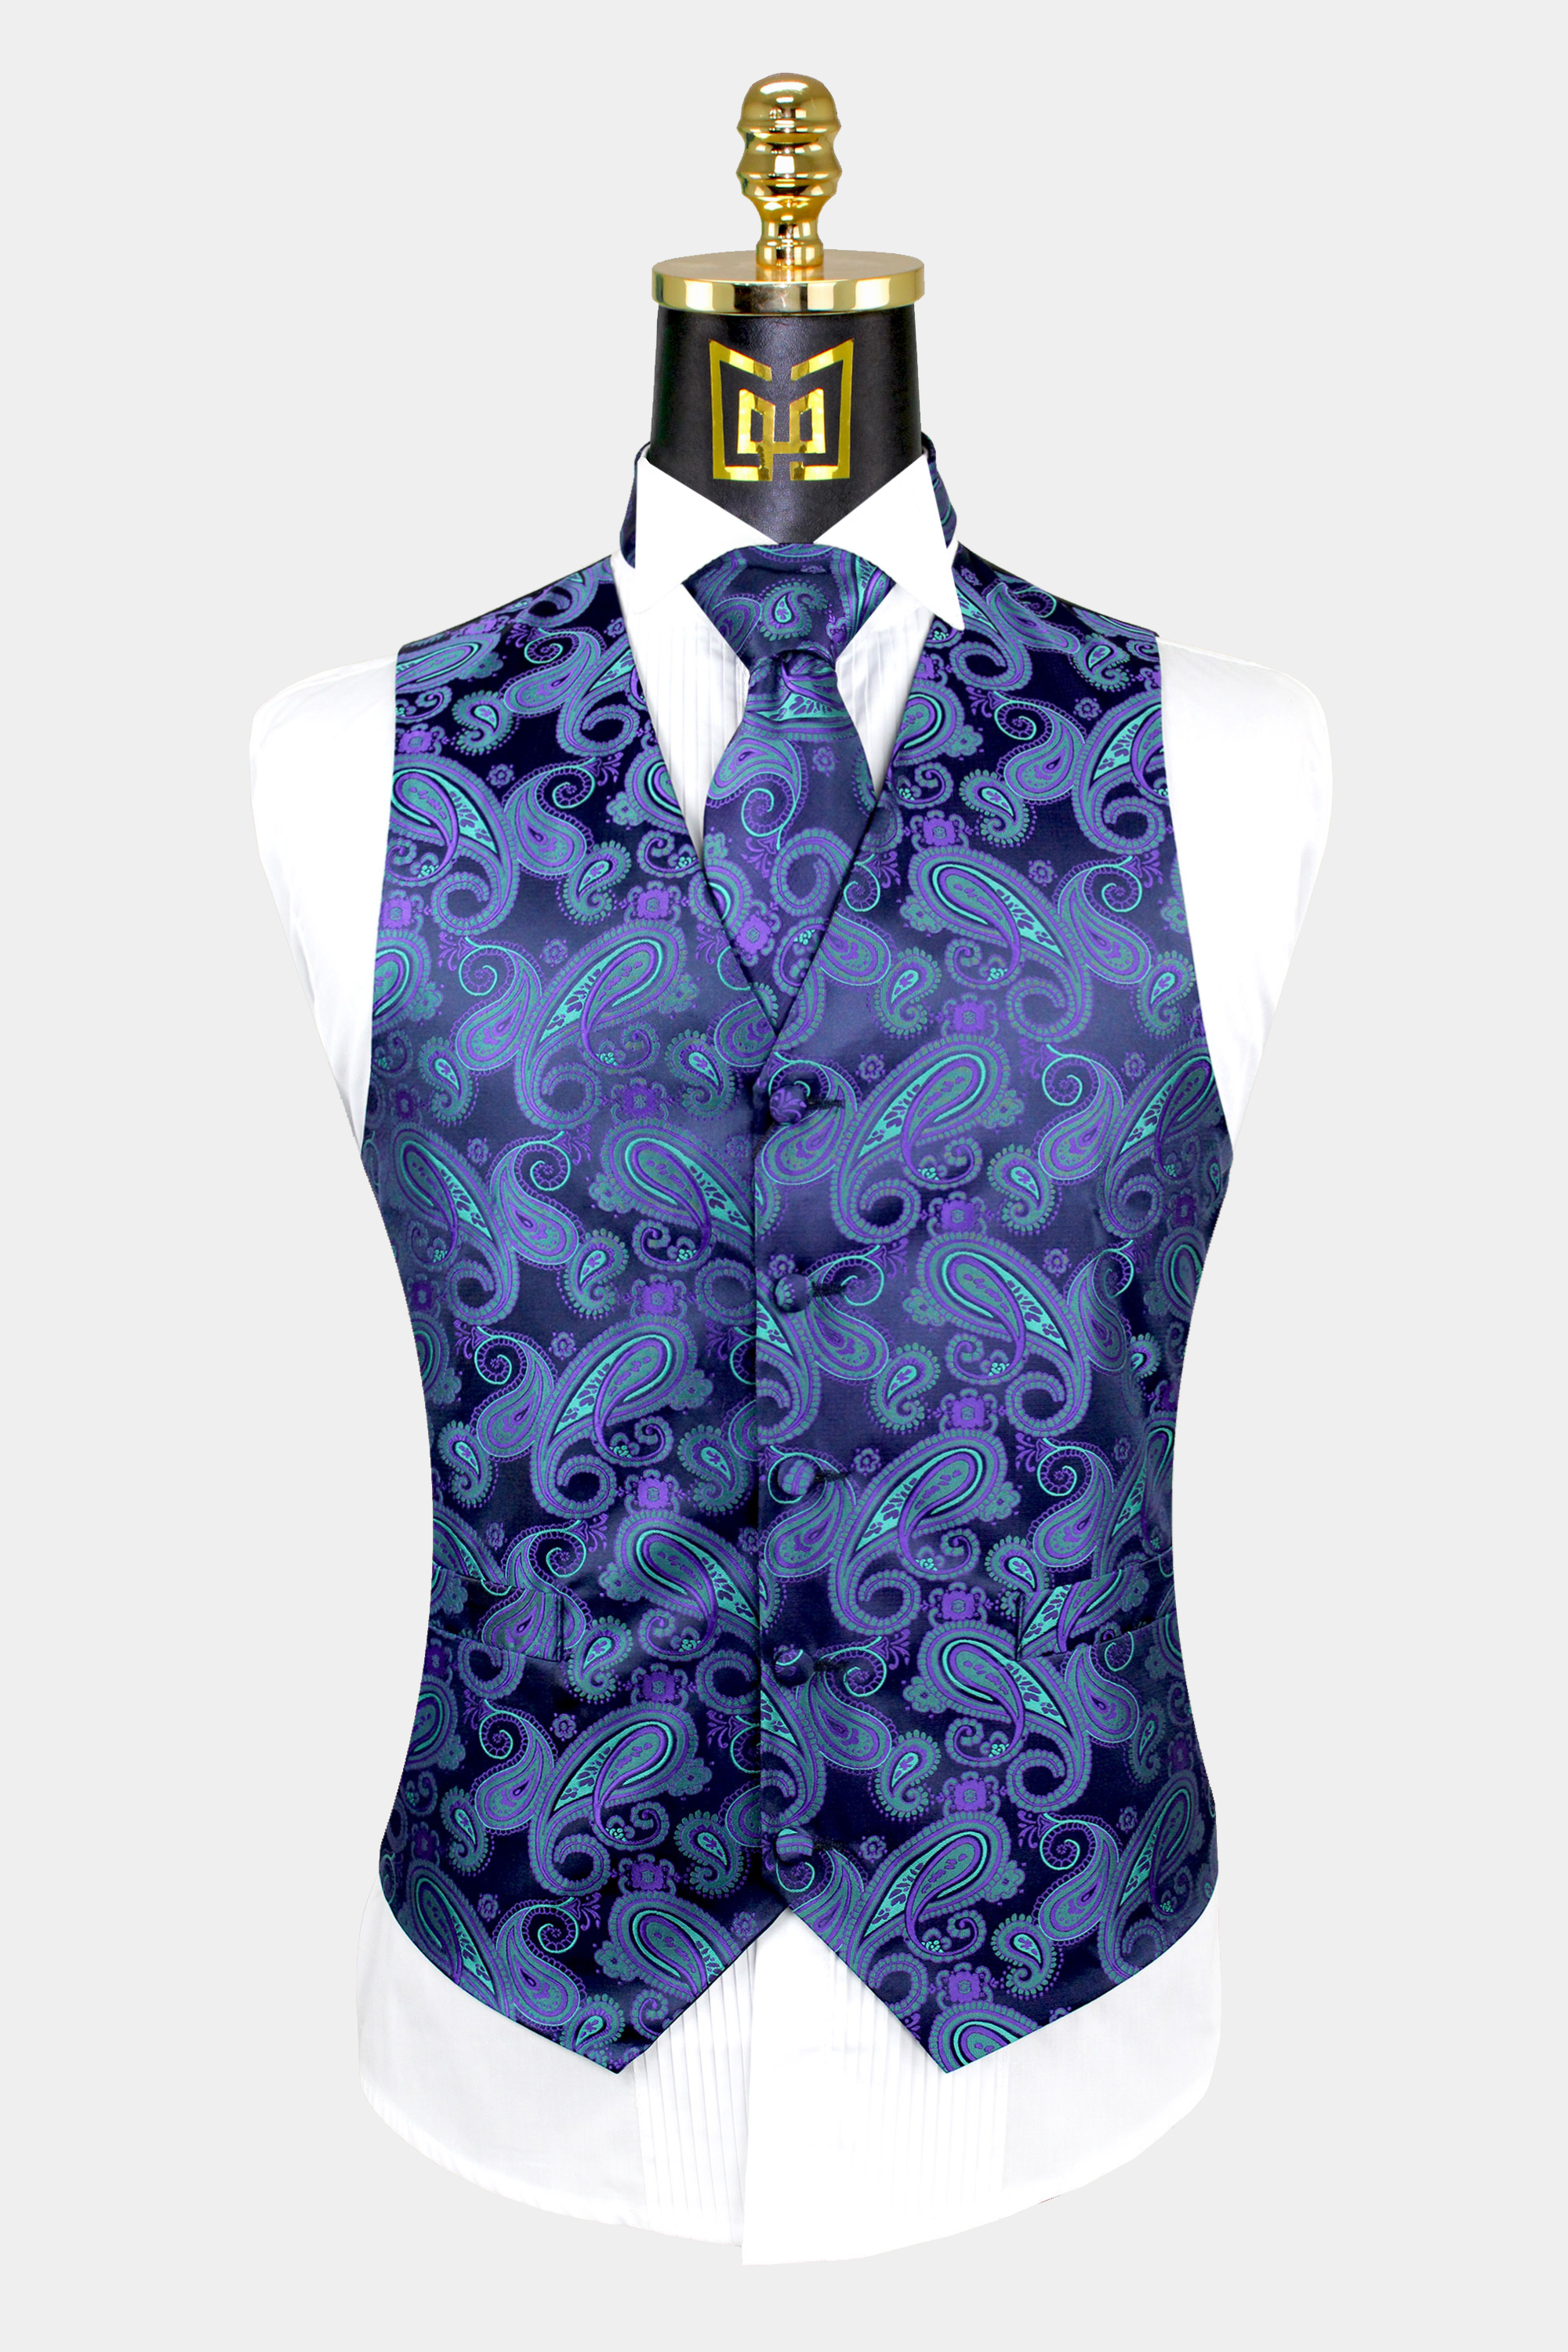 UK Men's Ivory Bridal Blush Wedding Waistcoat Swirl Leaf 6 Button Jacquard Suit 